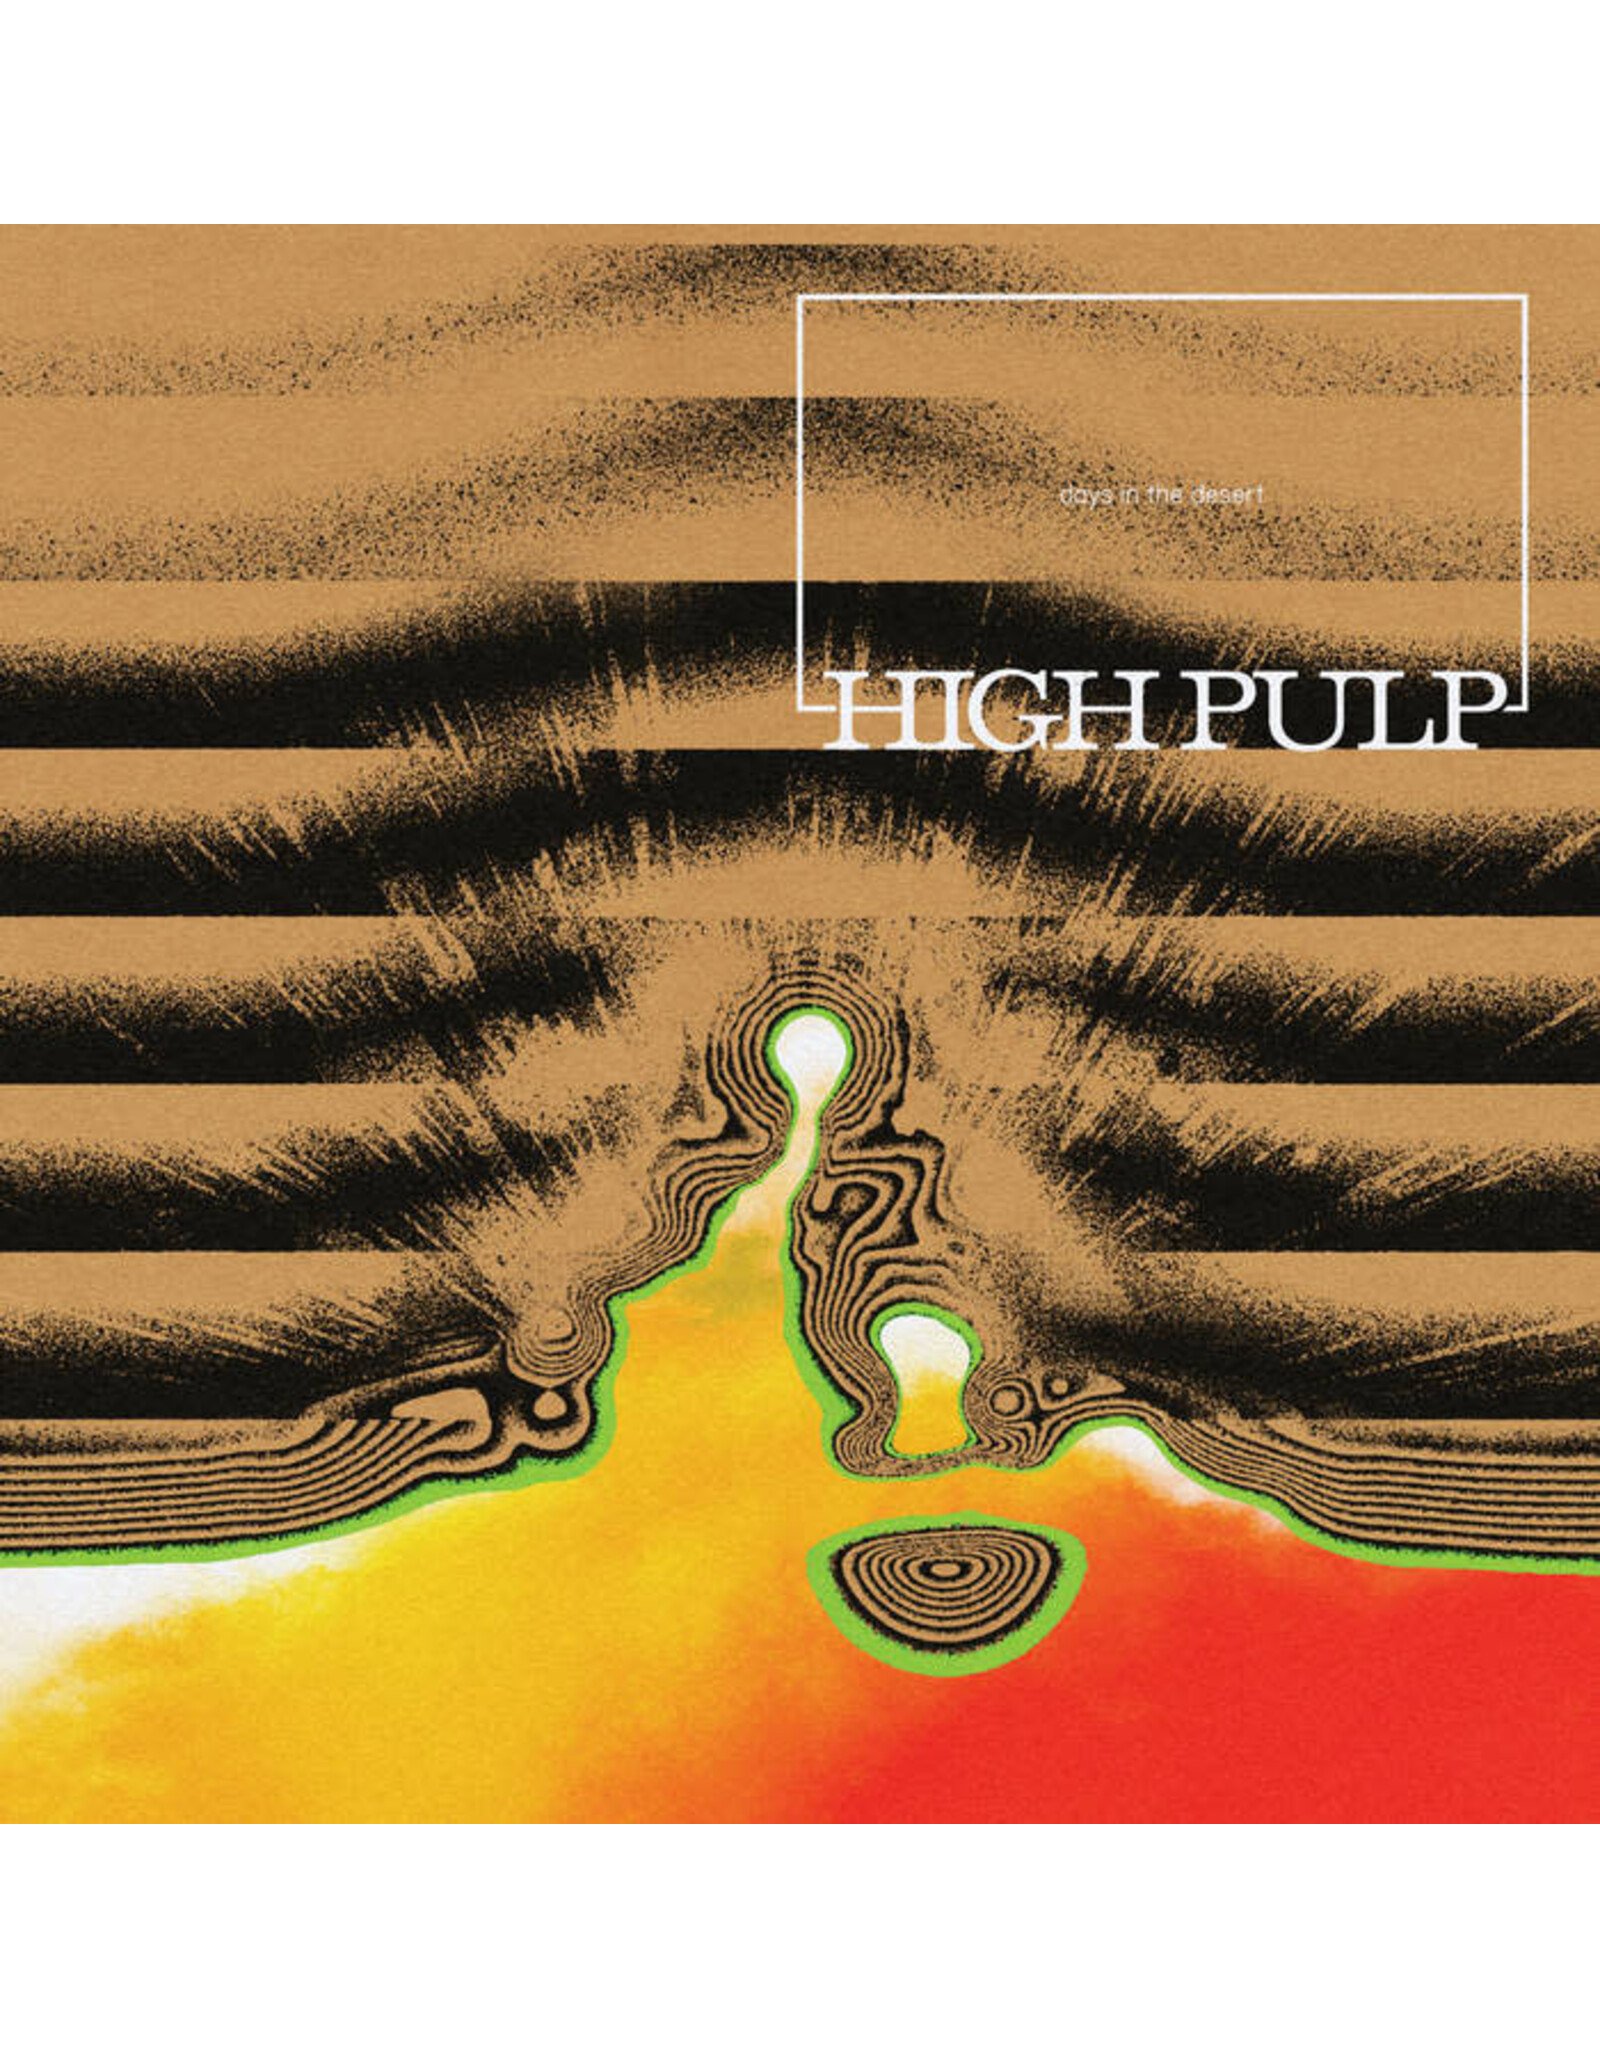 Anti High Pulp: Days In the Desert LP